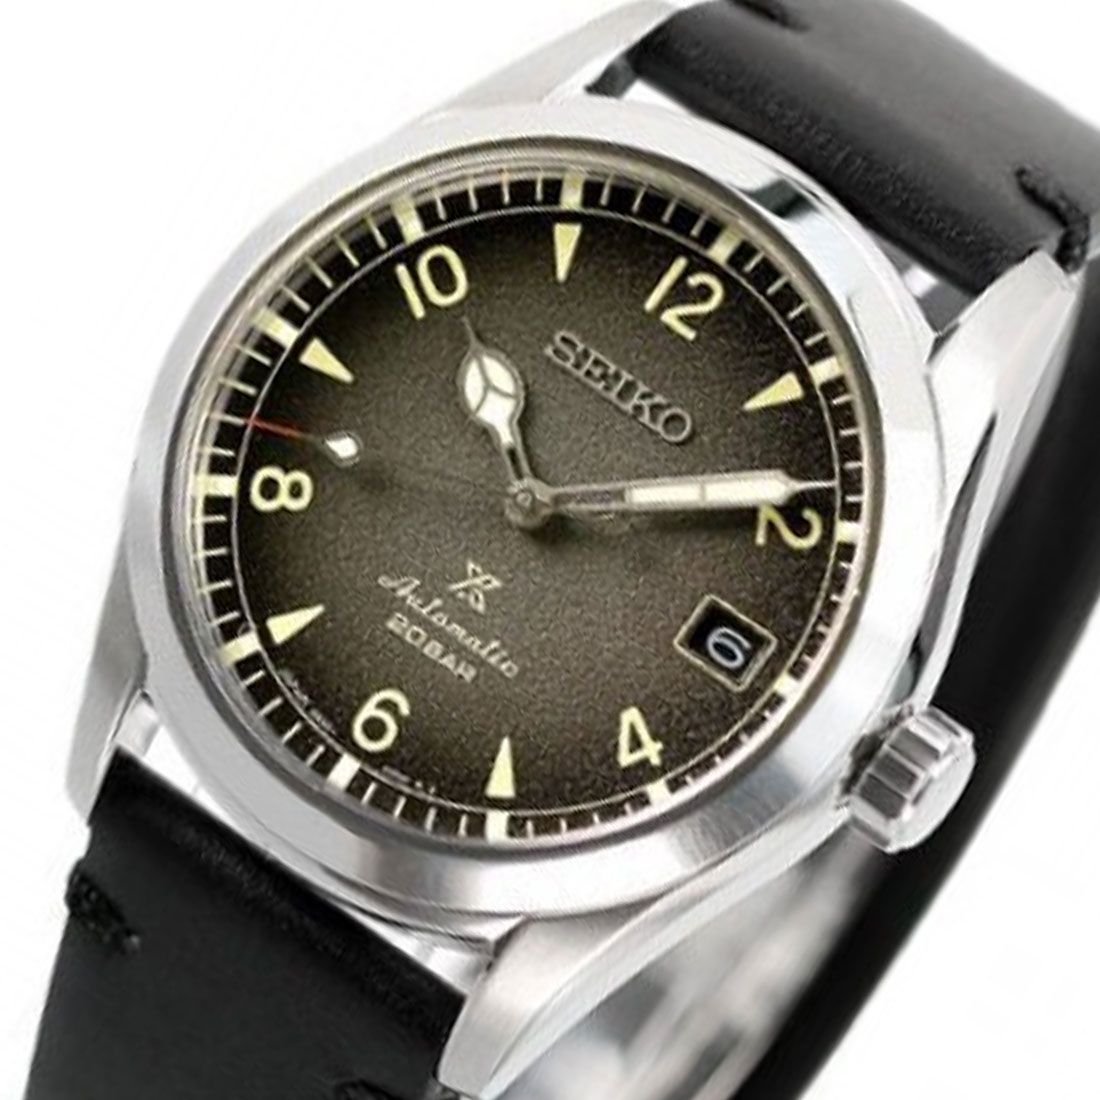 Seiko Prospex Alpinist Black Dial Leather JDM Watch SBDC119 -Seiko